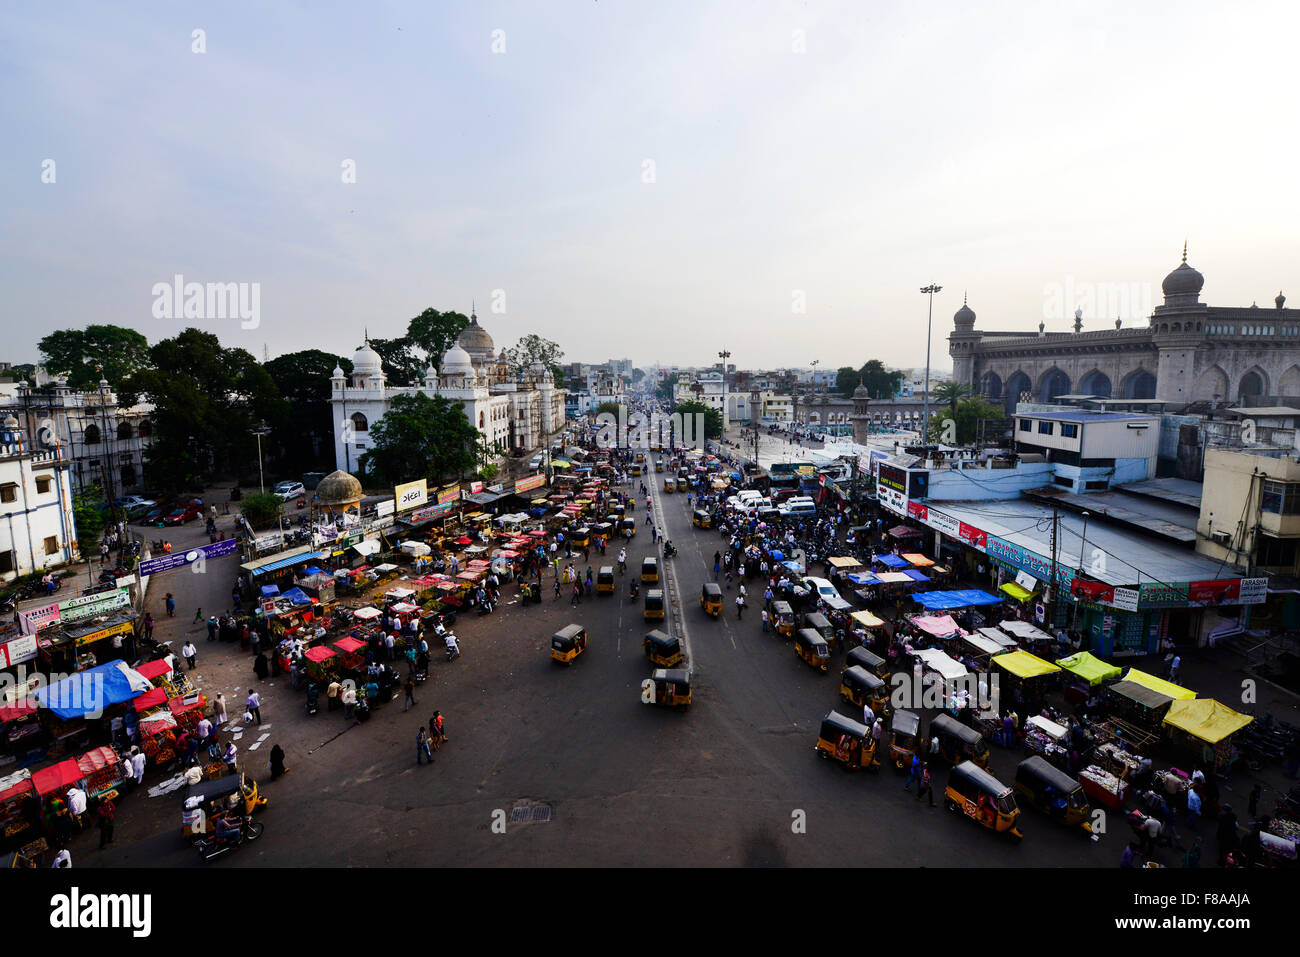 Ein Blick auf das Zentrum der alten Stadt Hyderabad wie gesehen von der Spitze des Denkmals Charminar. Stockfoto